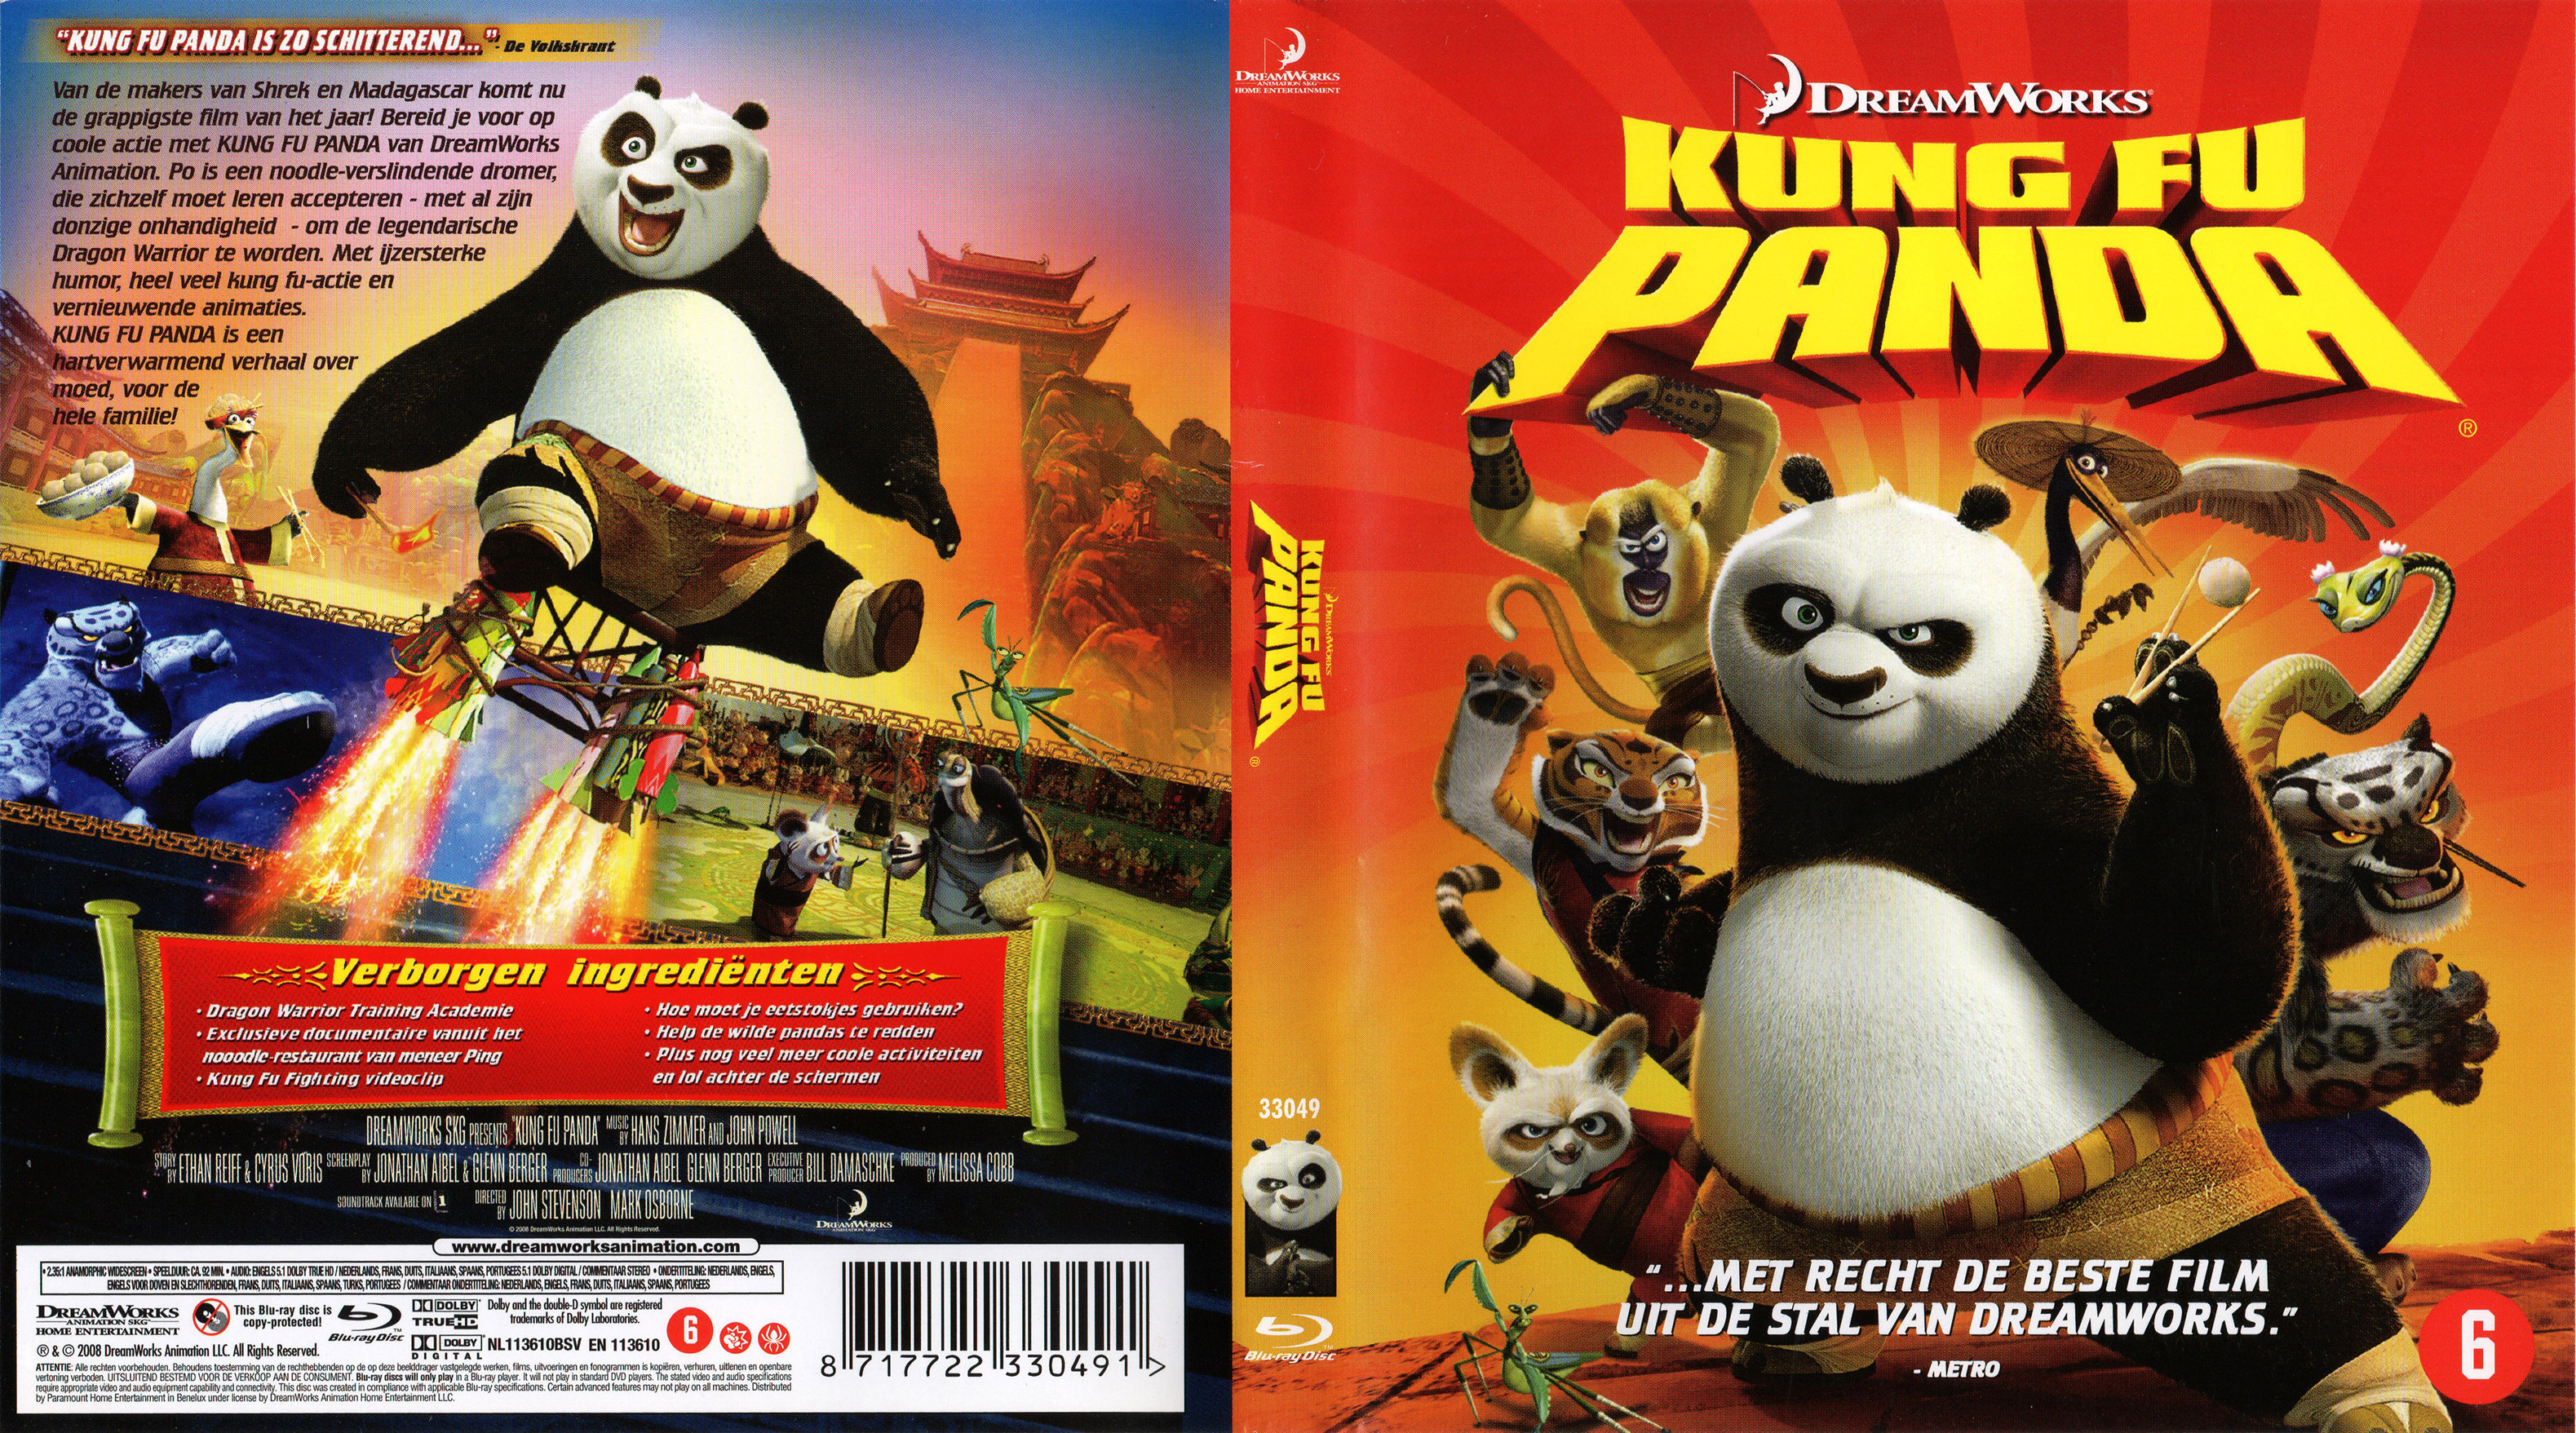 Jaquette DVD Kung Fu Panda (BLU-RAY) v2